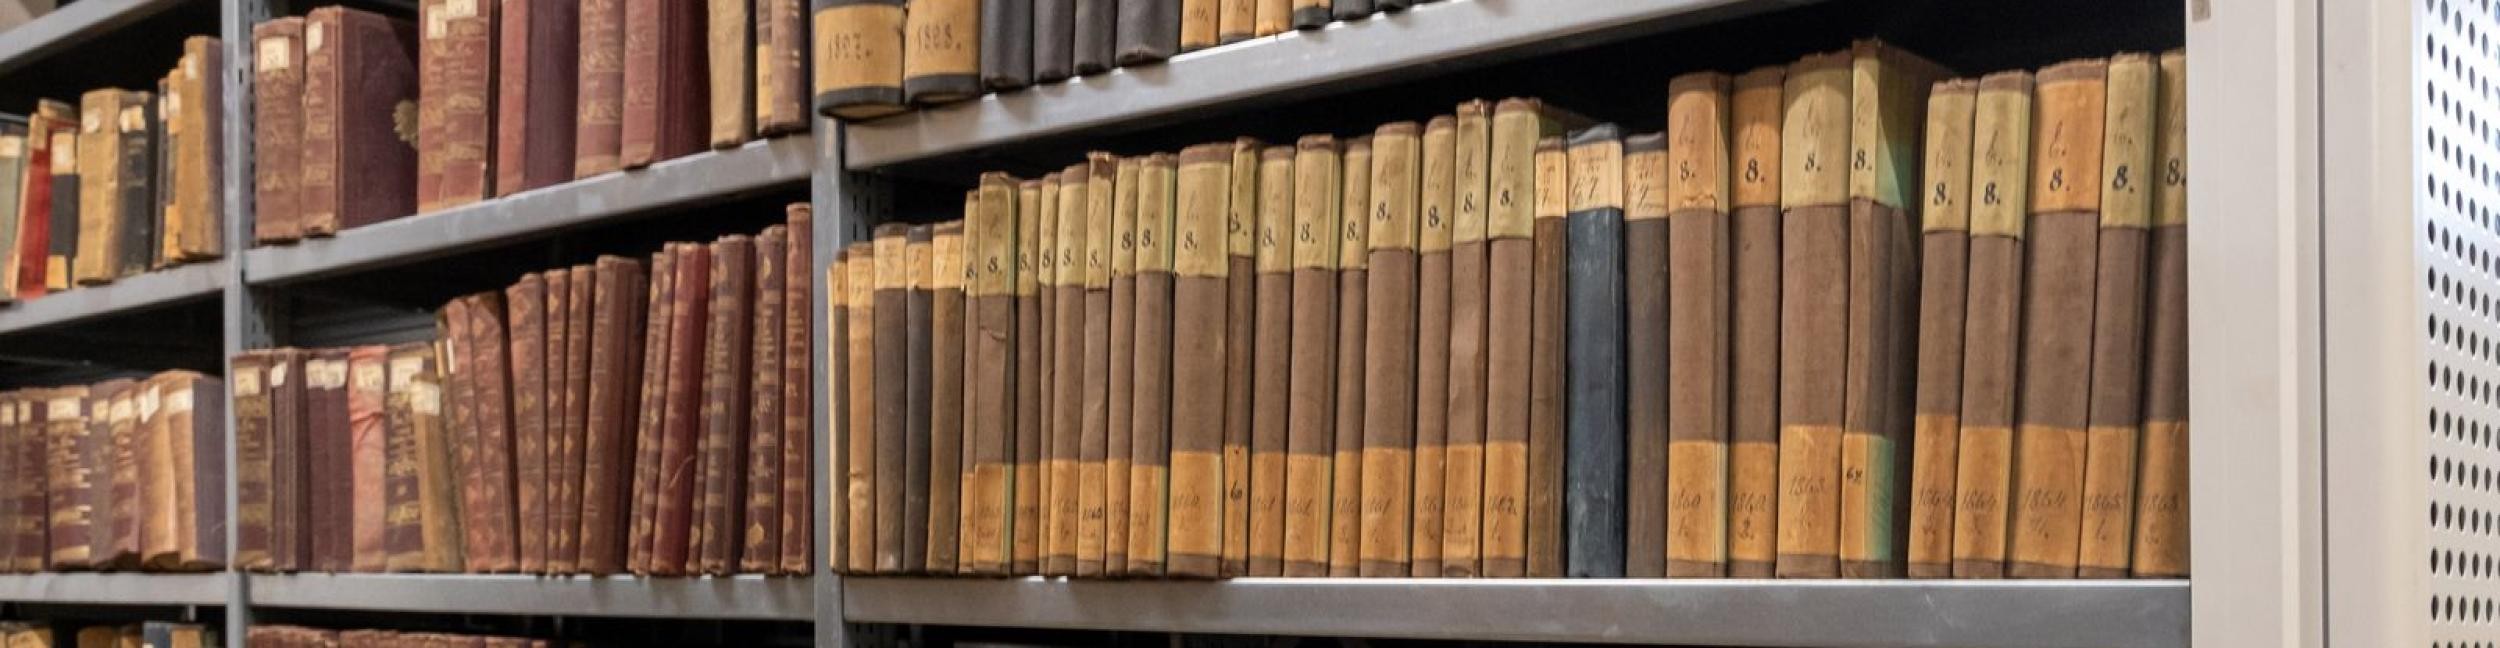 File shelves in the city archive of Rastatt.